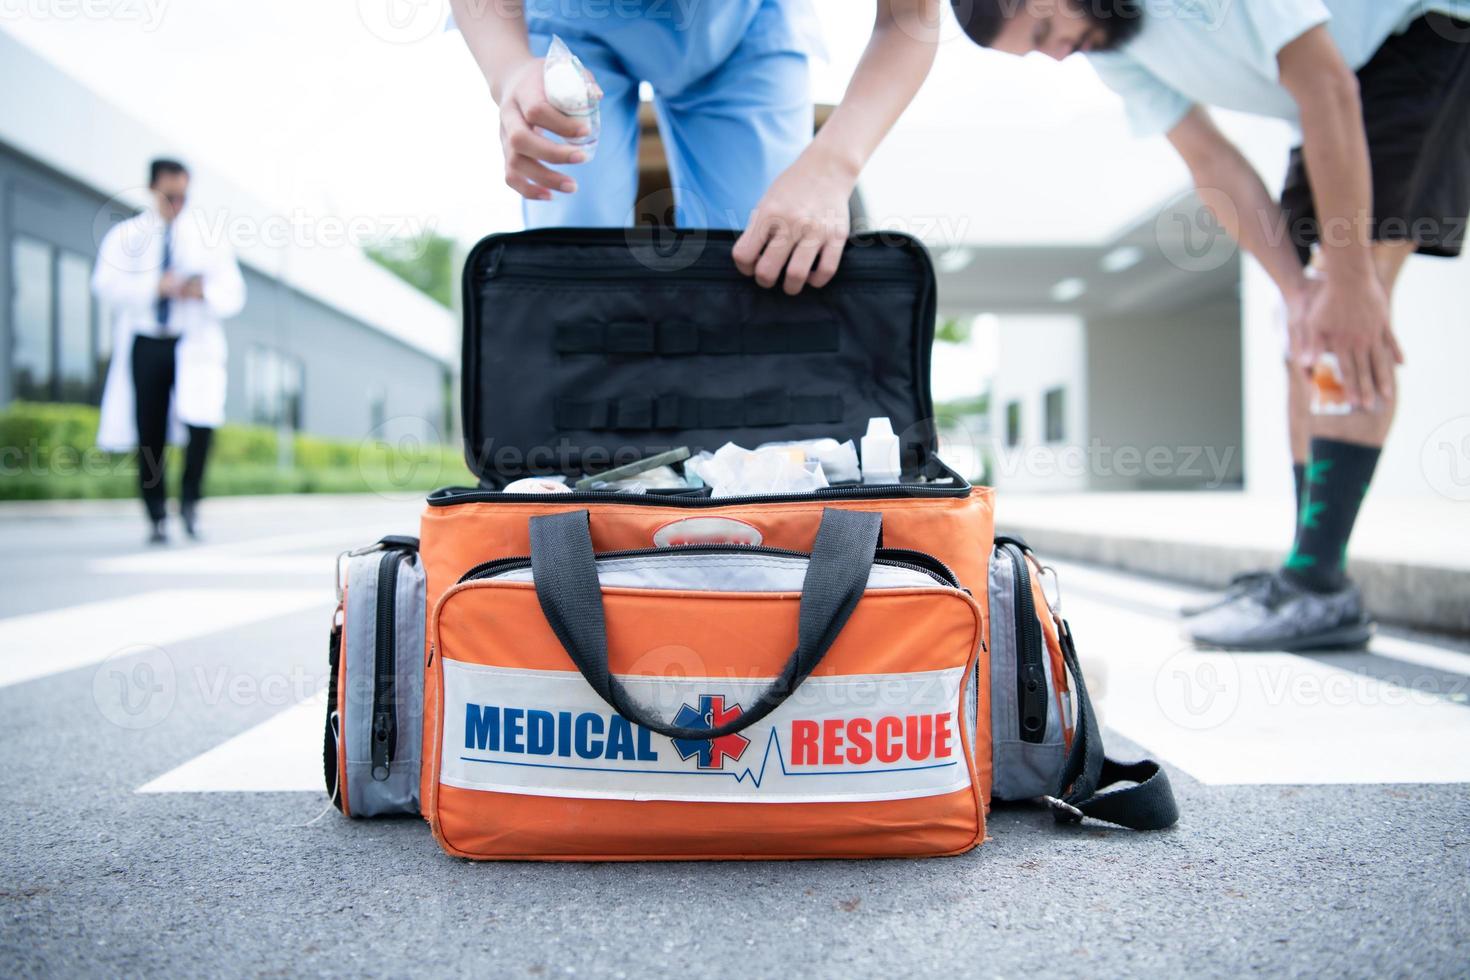 första hjälpen-väska, för det medicinska teamet som utför första hjälpen vid olyckor i ambulansen foto